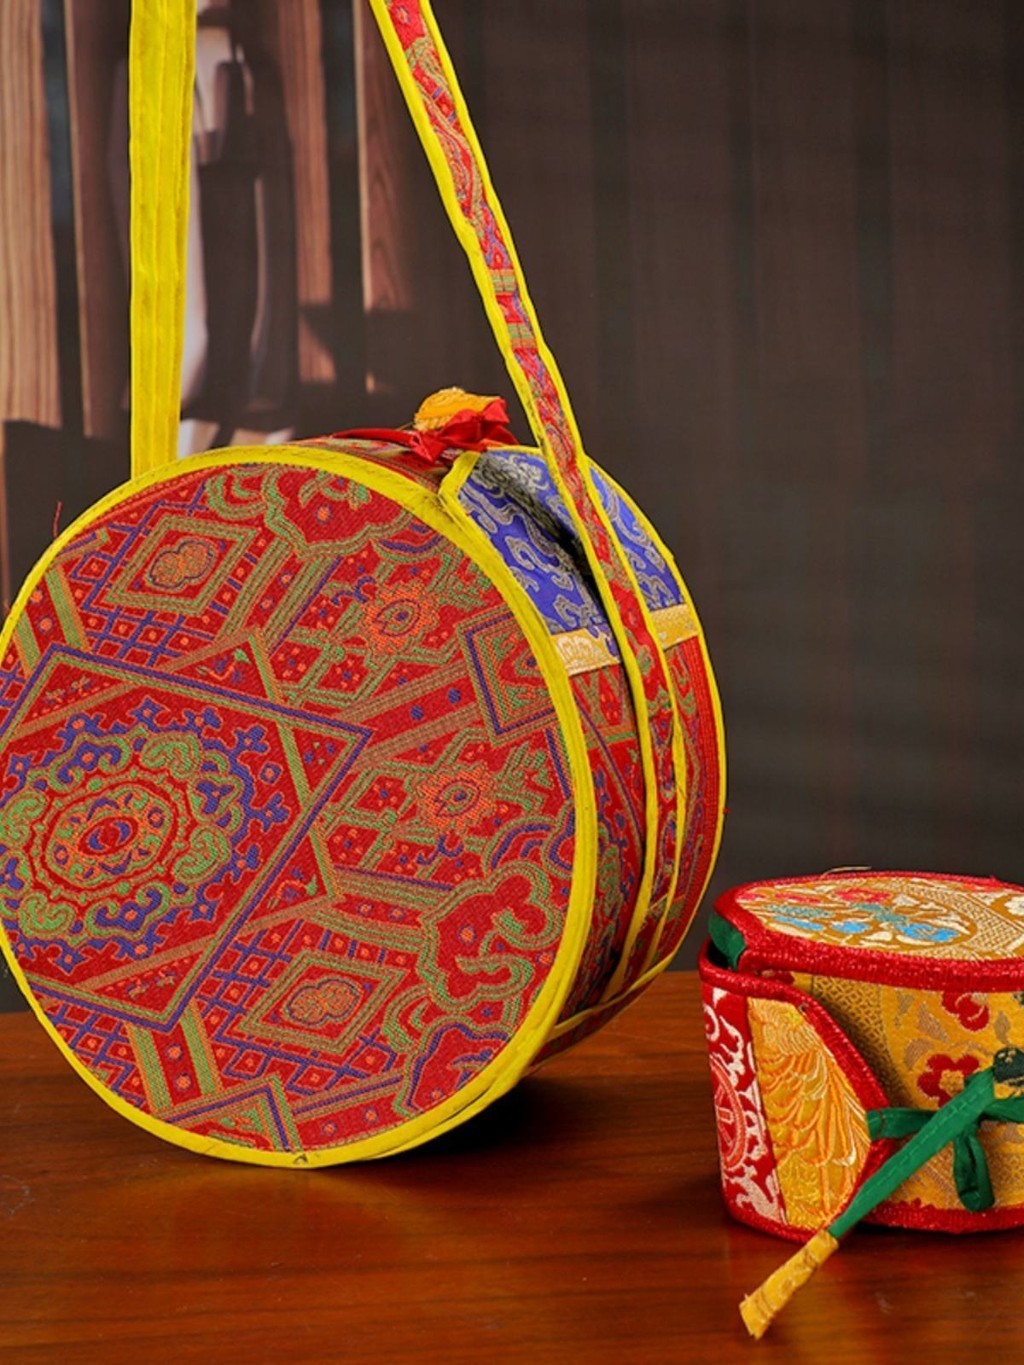 ♞尼泊爾藏傳密宗手鼓嘎巴拉法鼓帶 鼓槌 法器佛具鼓飾配件鼓球袋子 結緣免運

